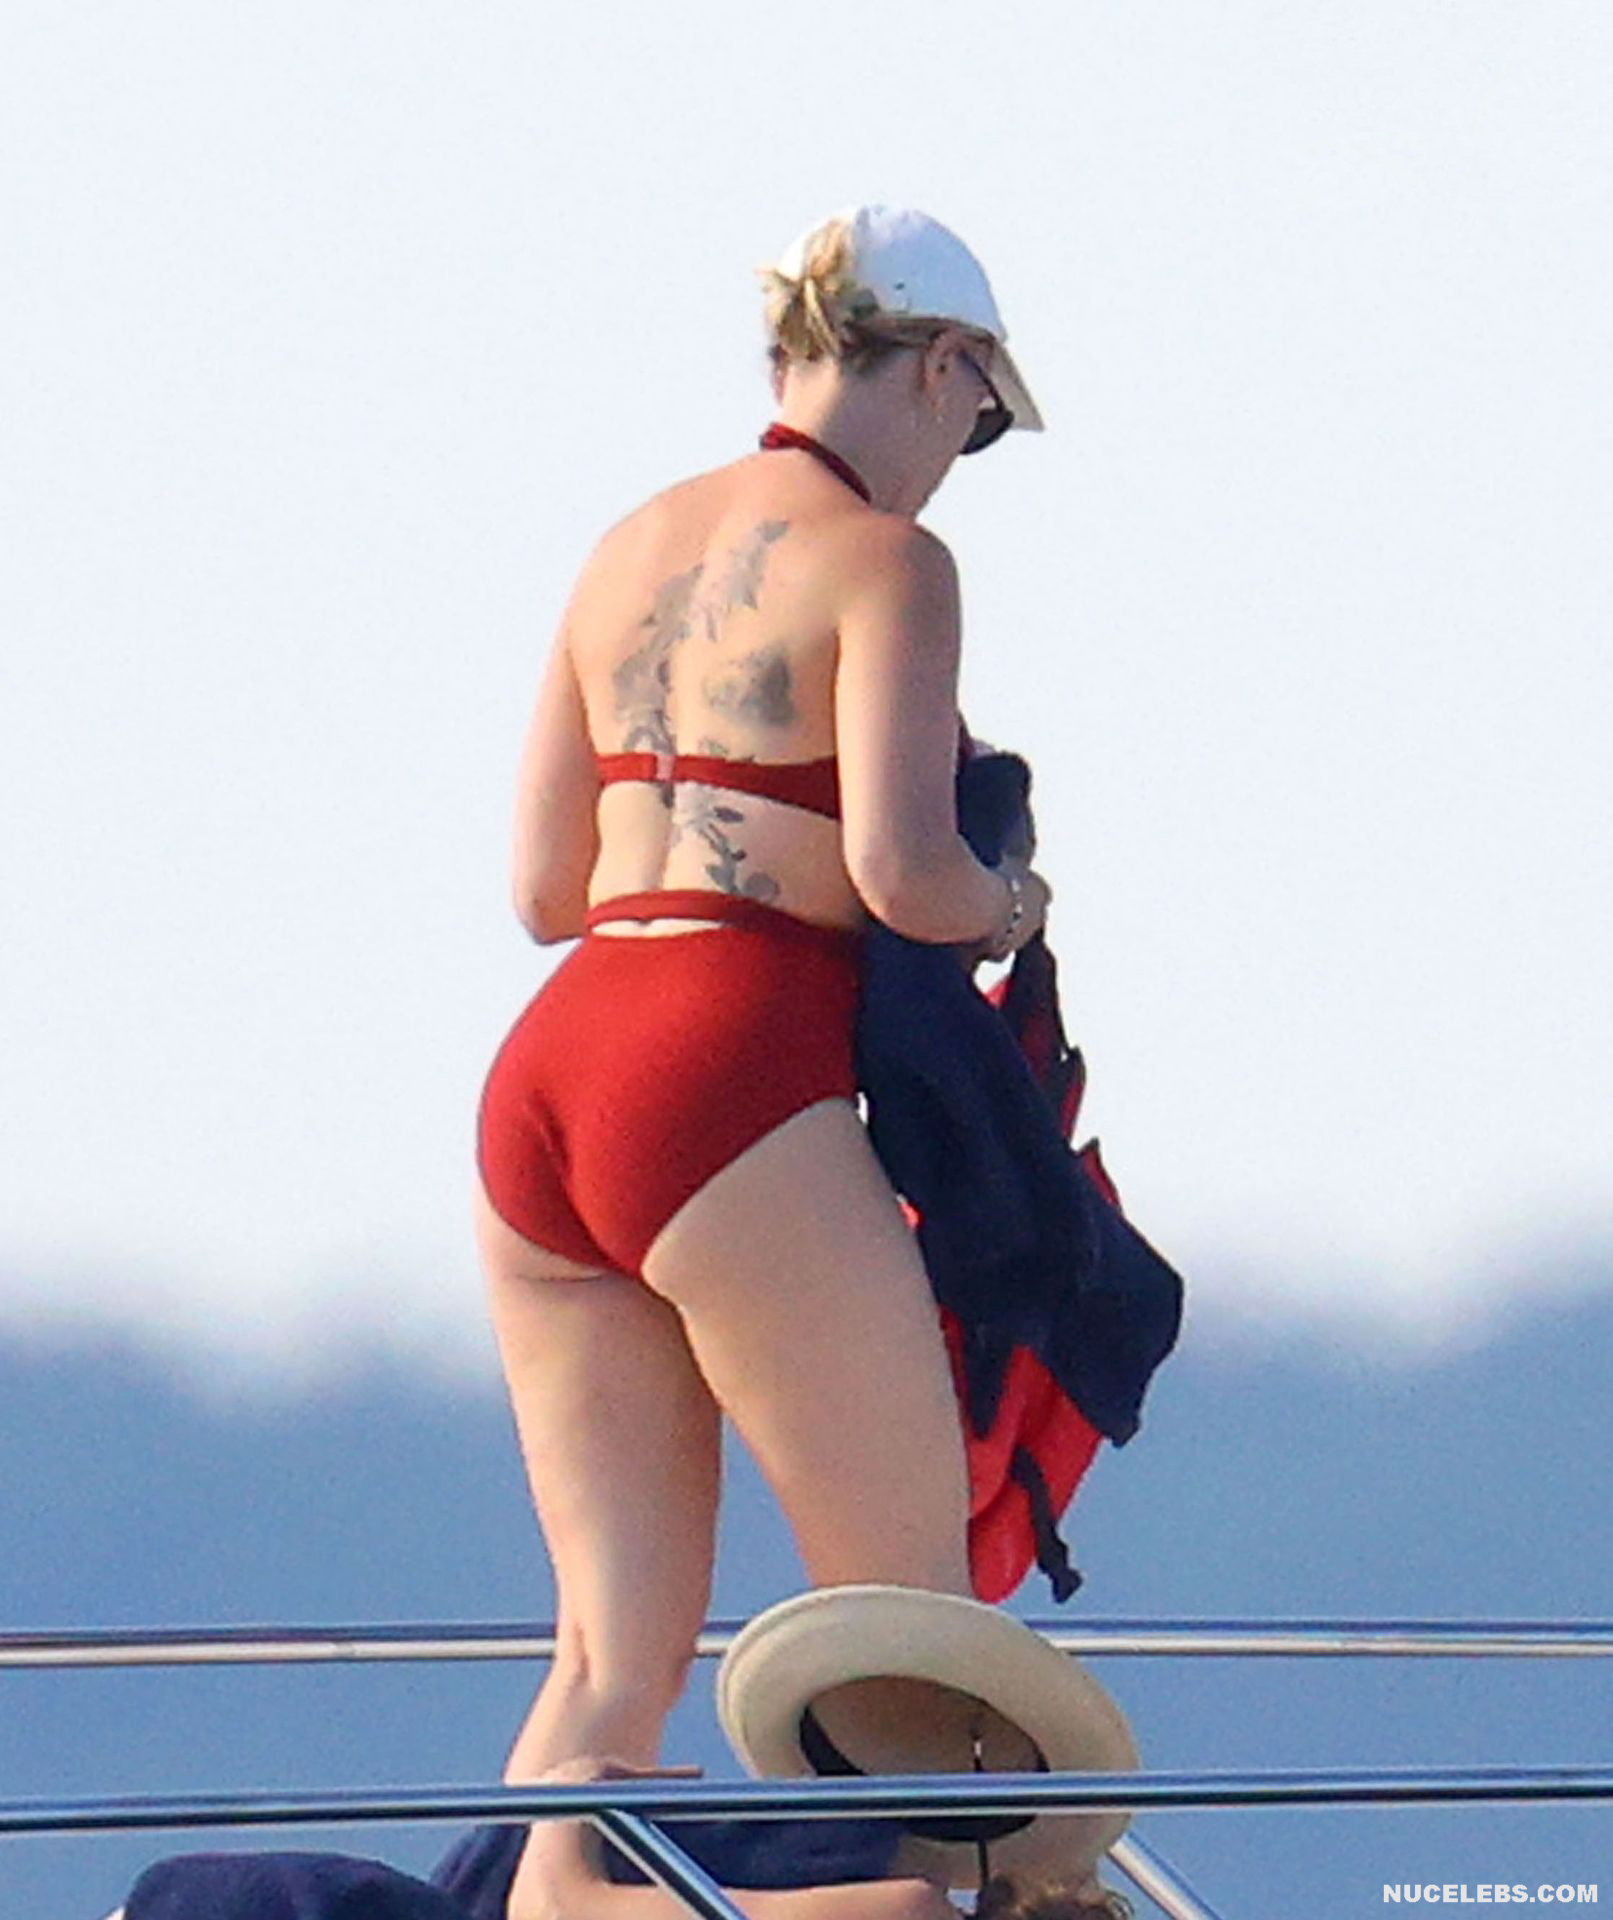 Scarlett Johansson Nude picture pic